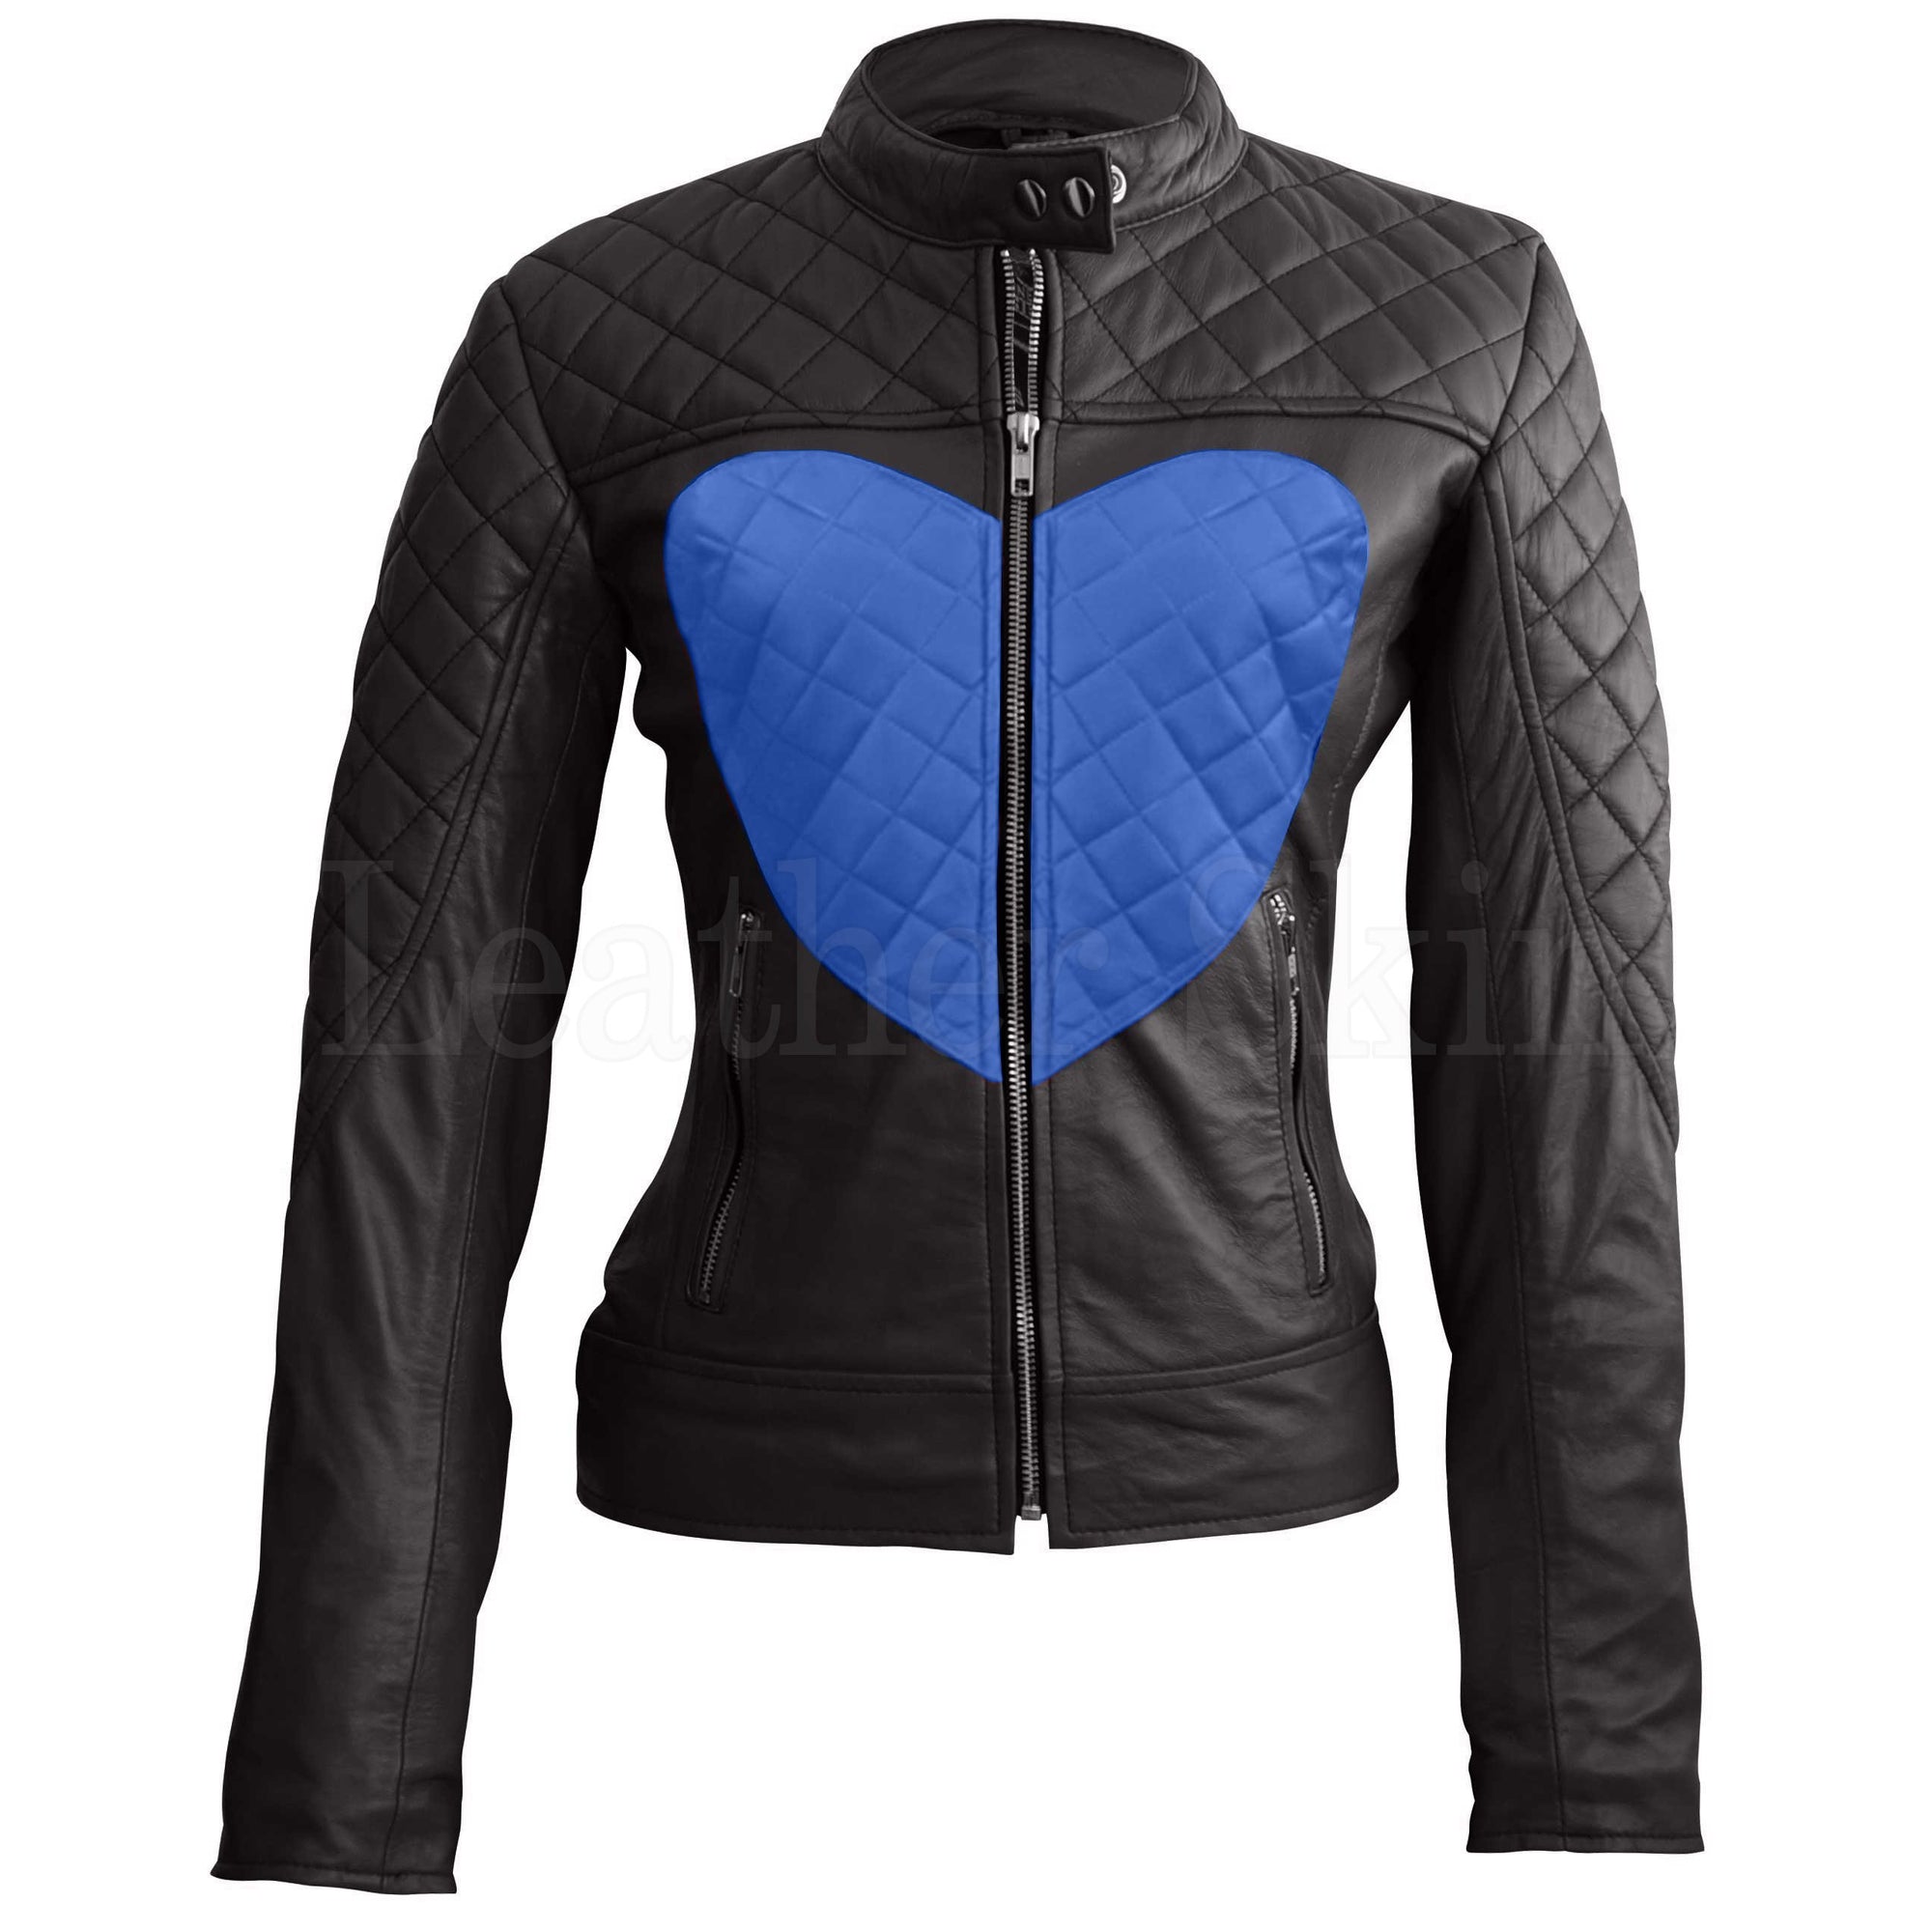 Luna Navy Blue Studded Leather Jacket - Leather Skin Shop